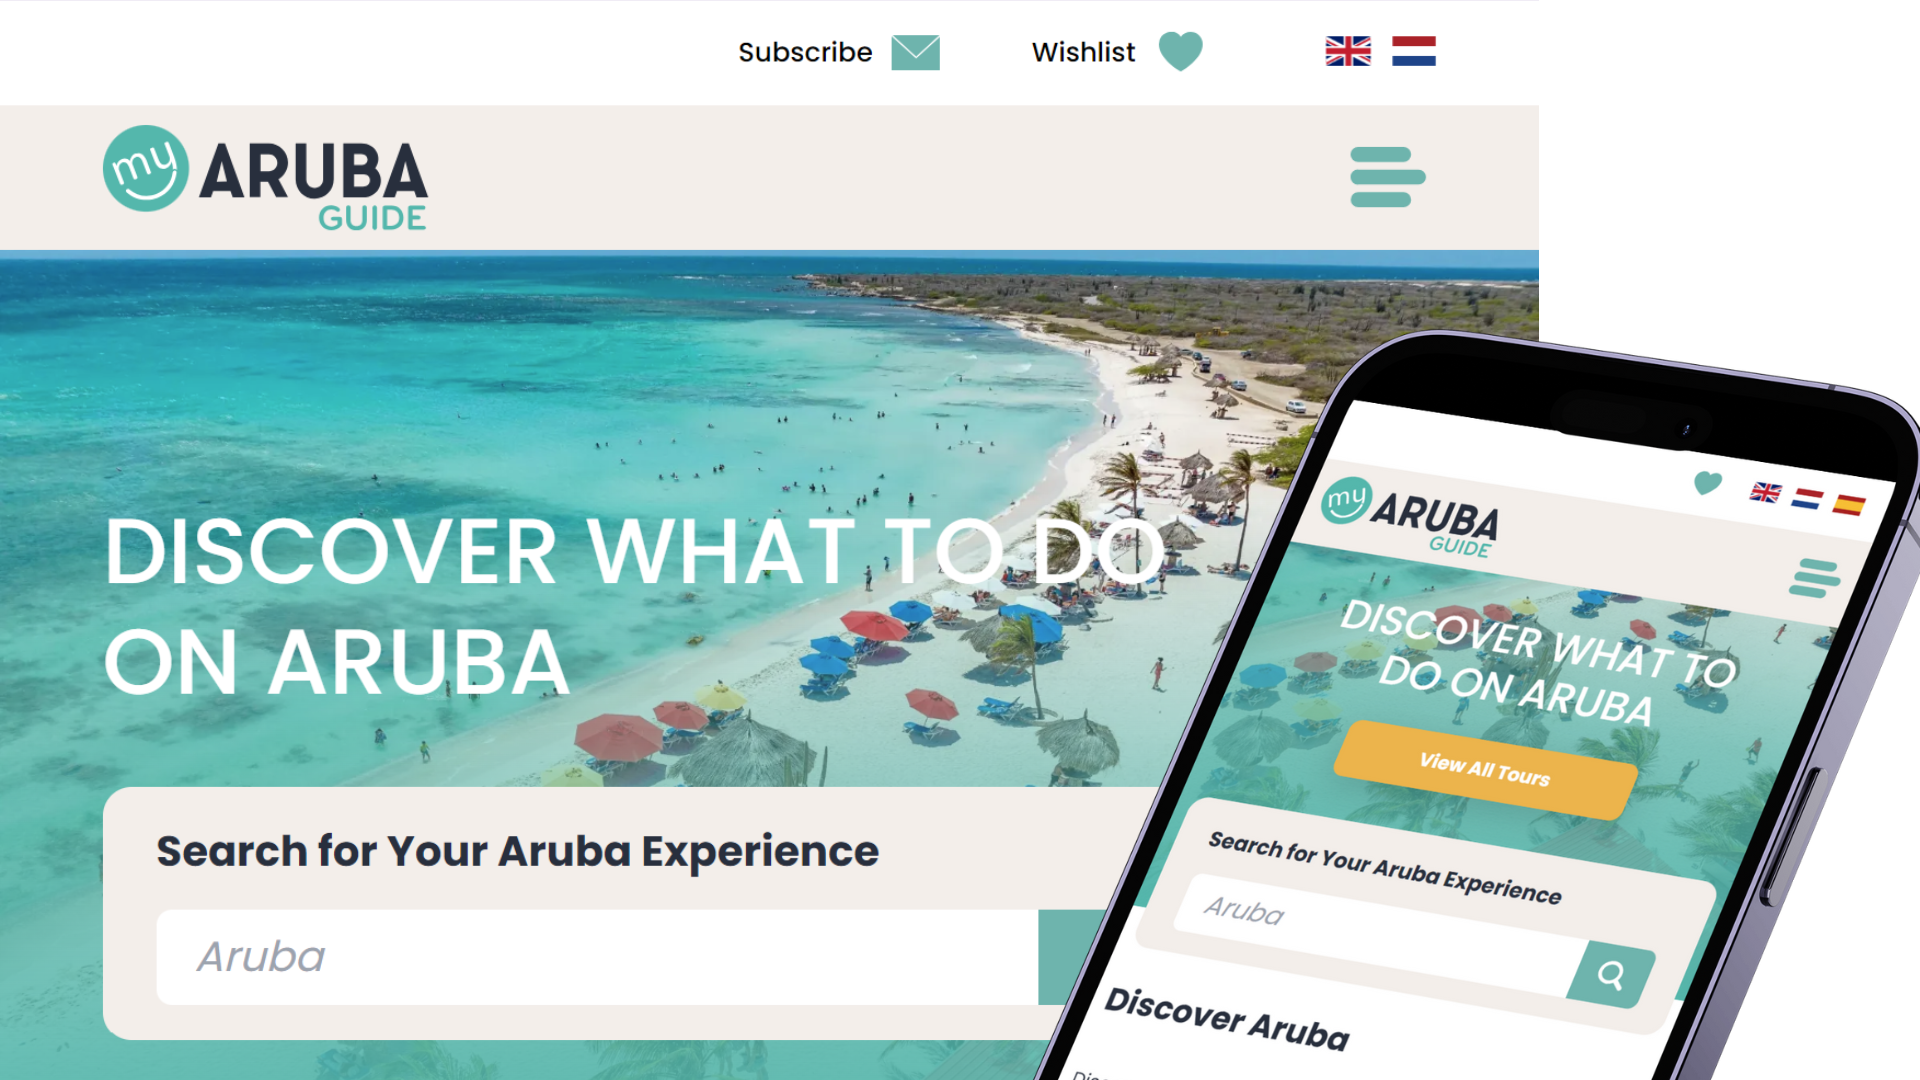 My Aruba Guide: Ontwikkeling van een razendsnelle reis website